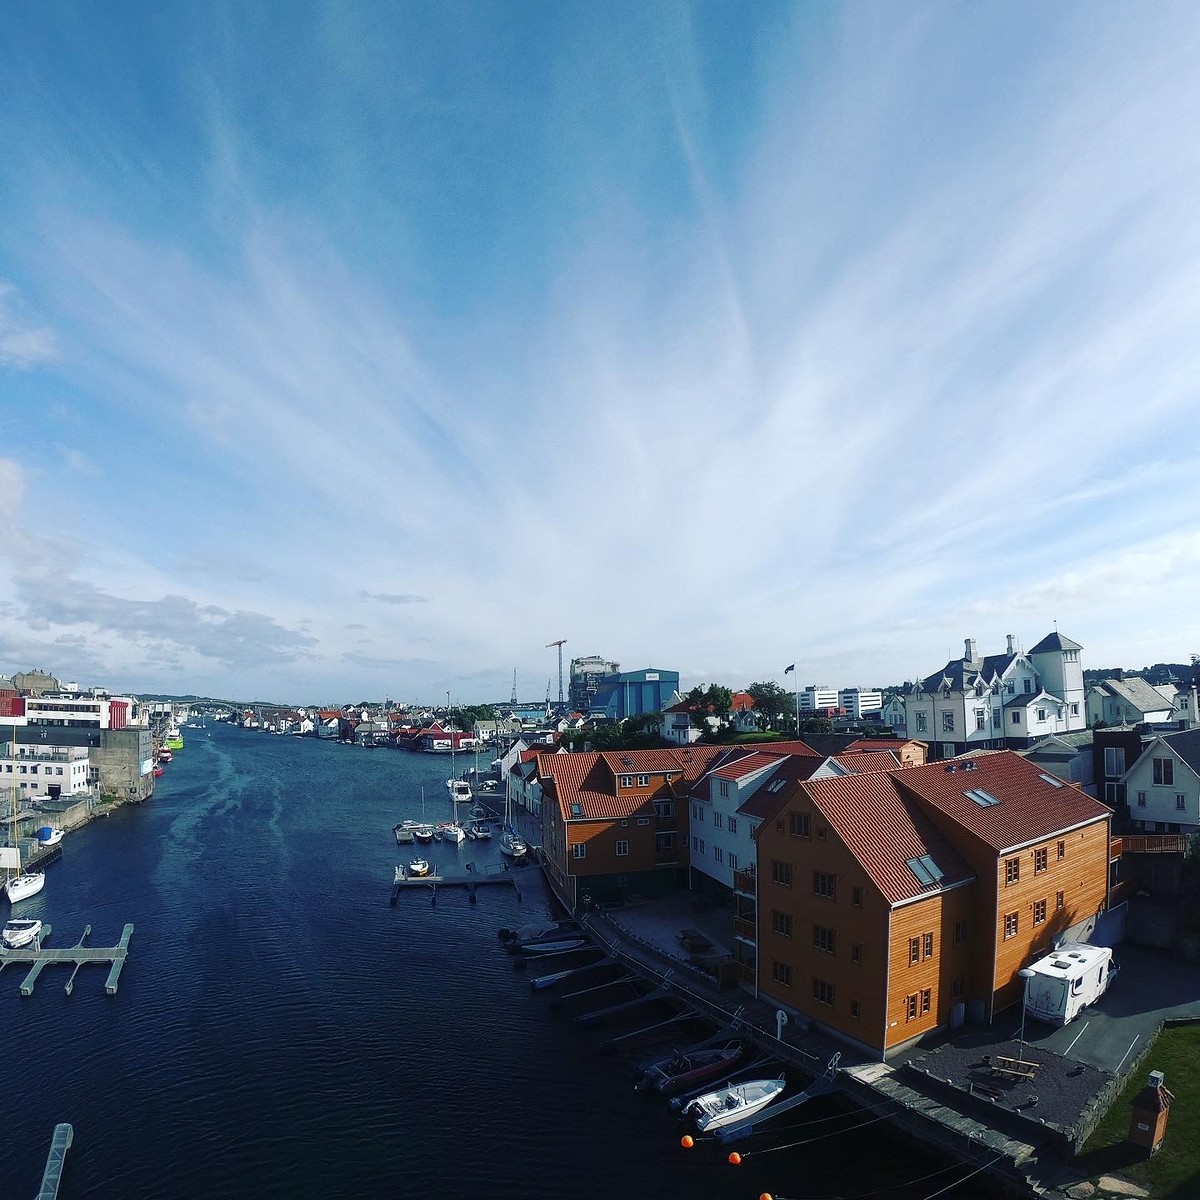 Haugesund เมืองเล็กๆ ทางตะวันตก